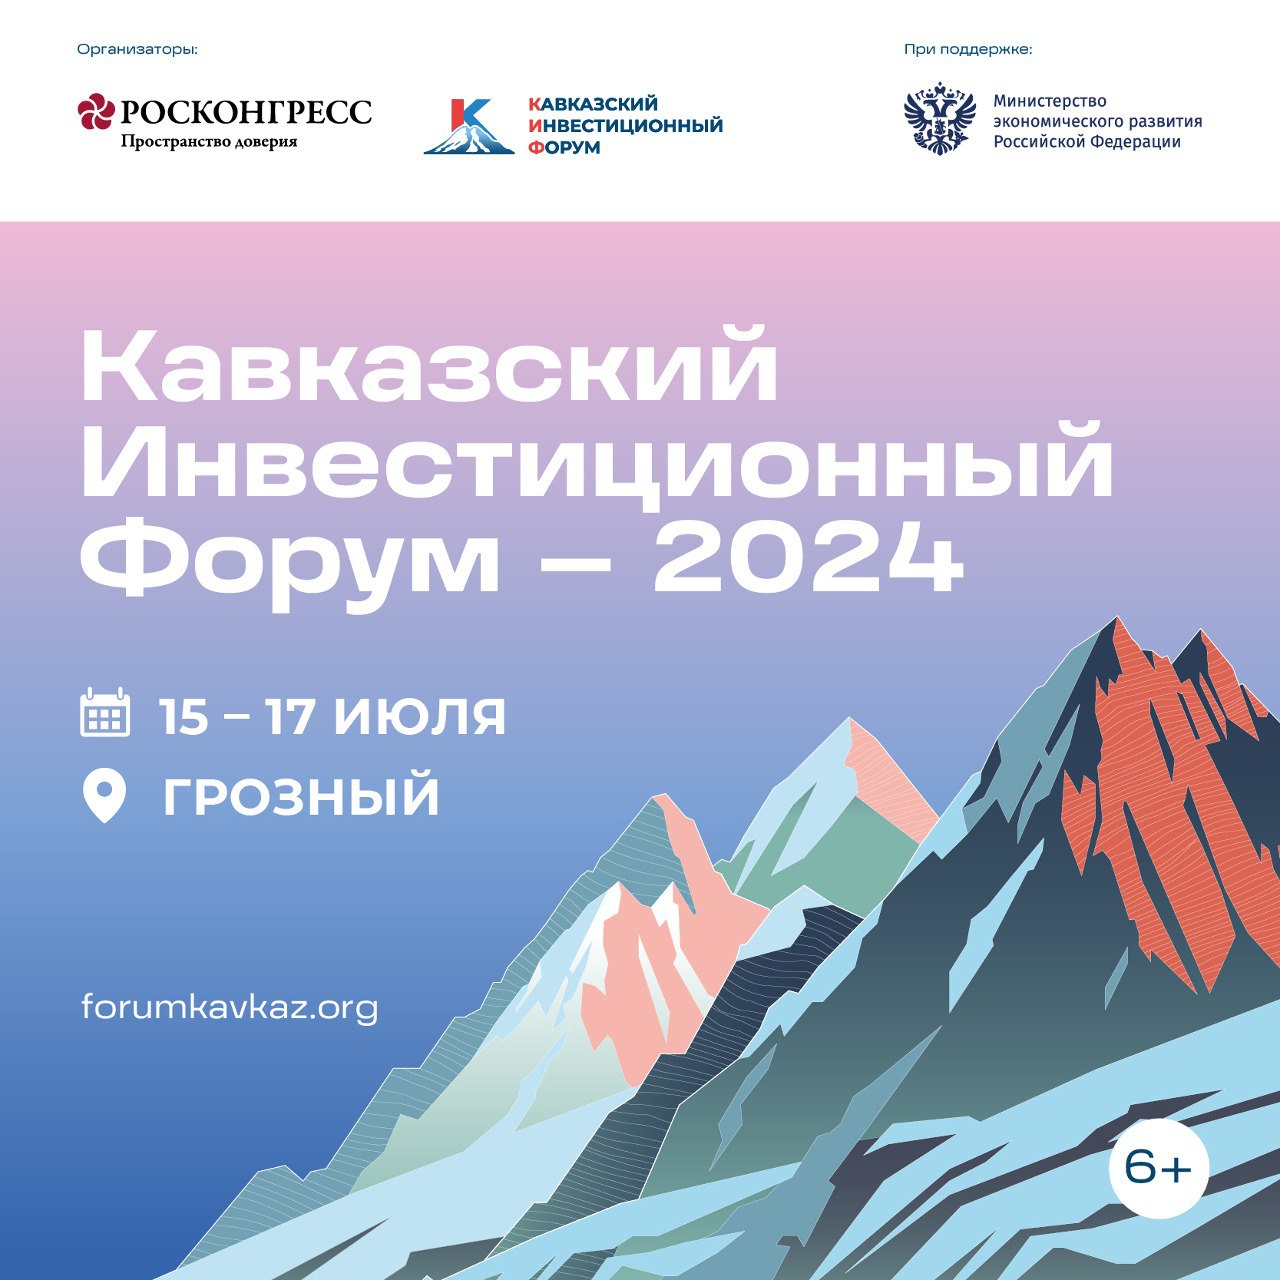 В середине июля в Грозном пройдет Кавказский инвестиционный форум